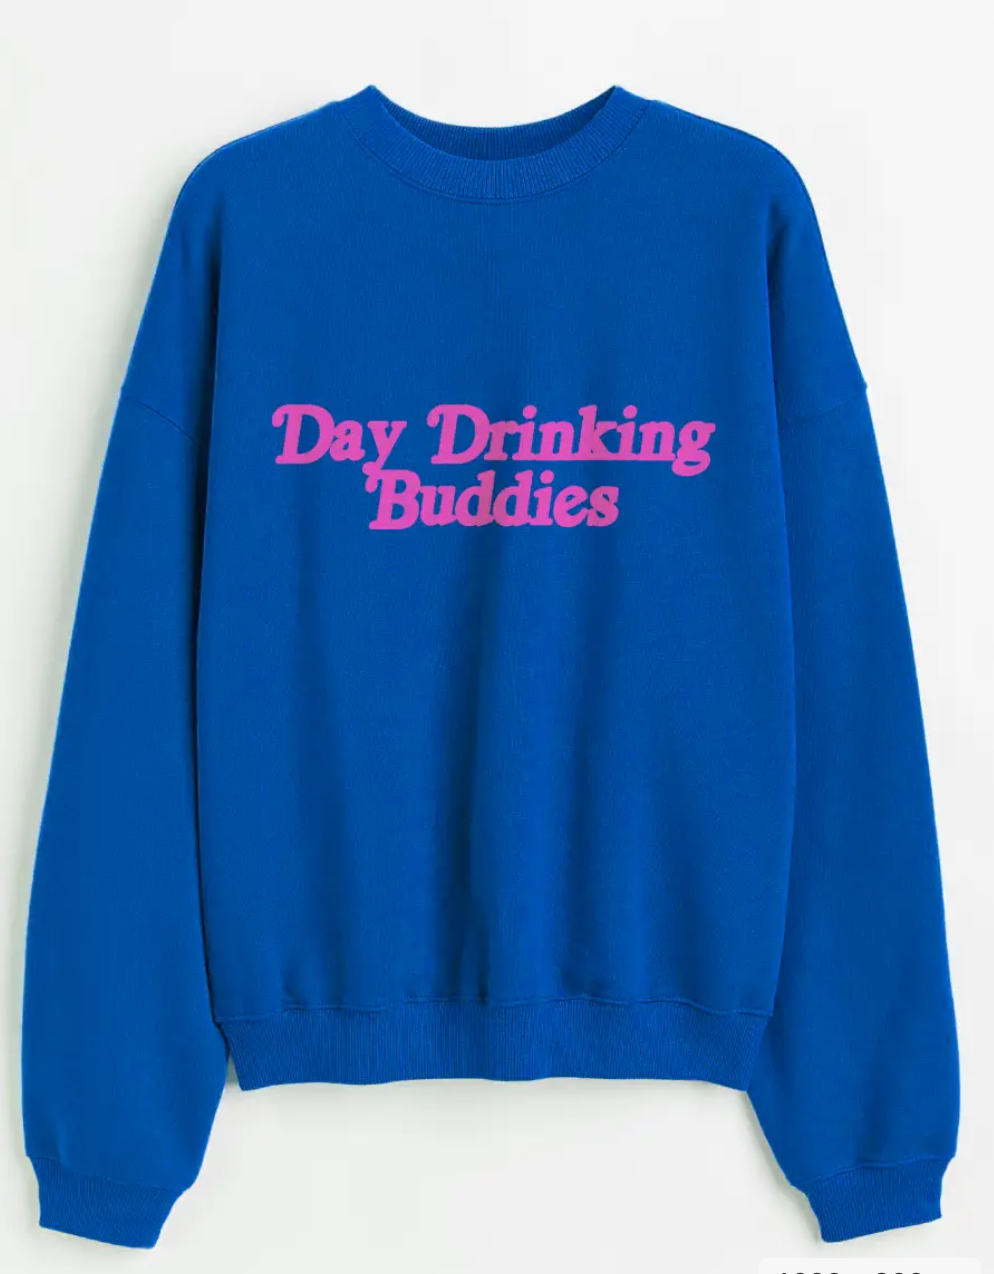 Day Drinking Buddies Sweatshirt - Blue